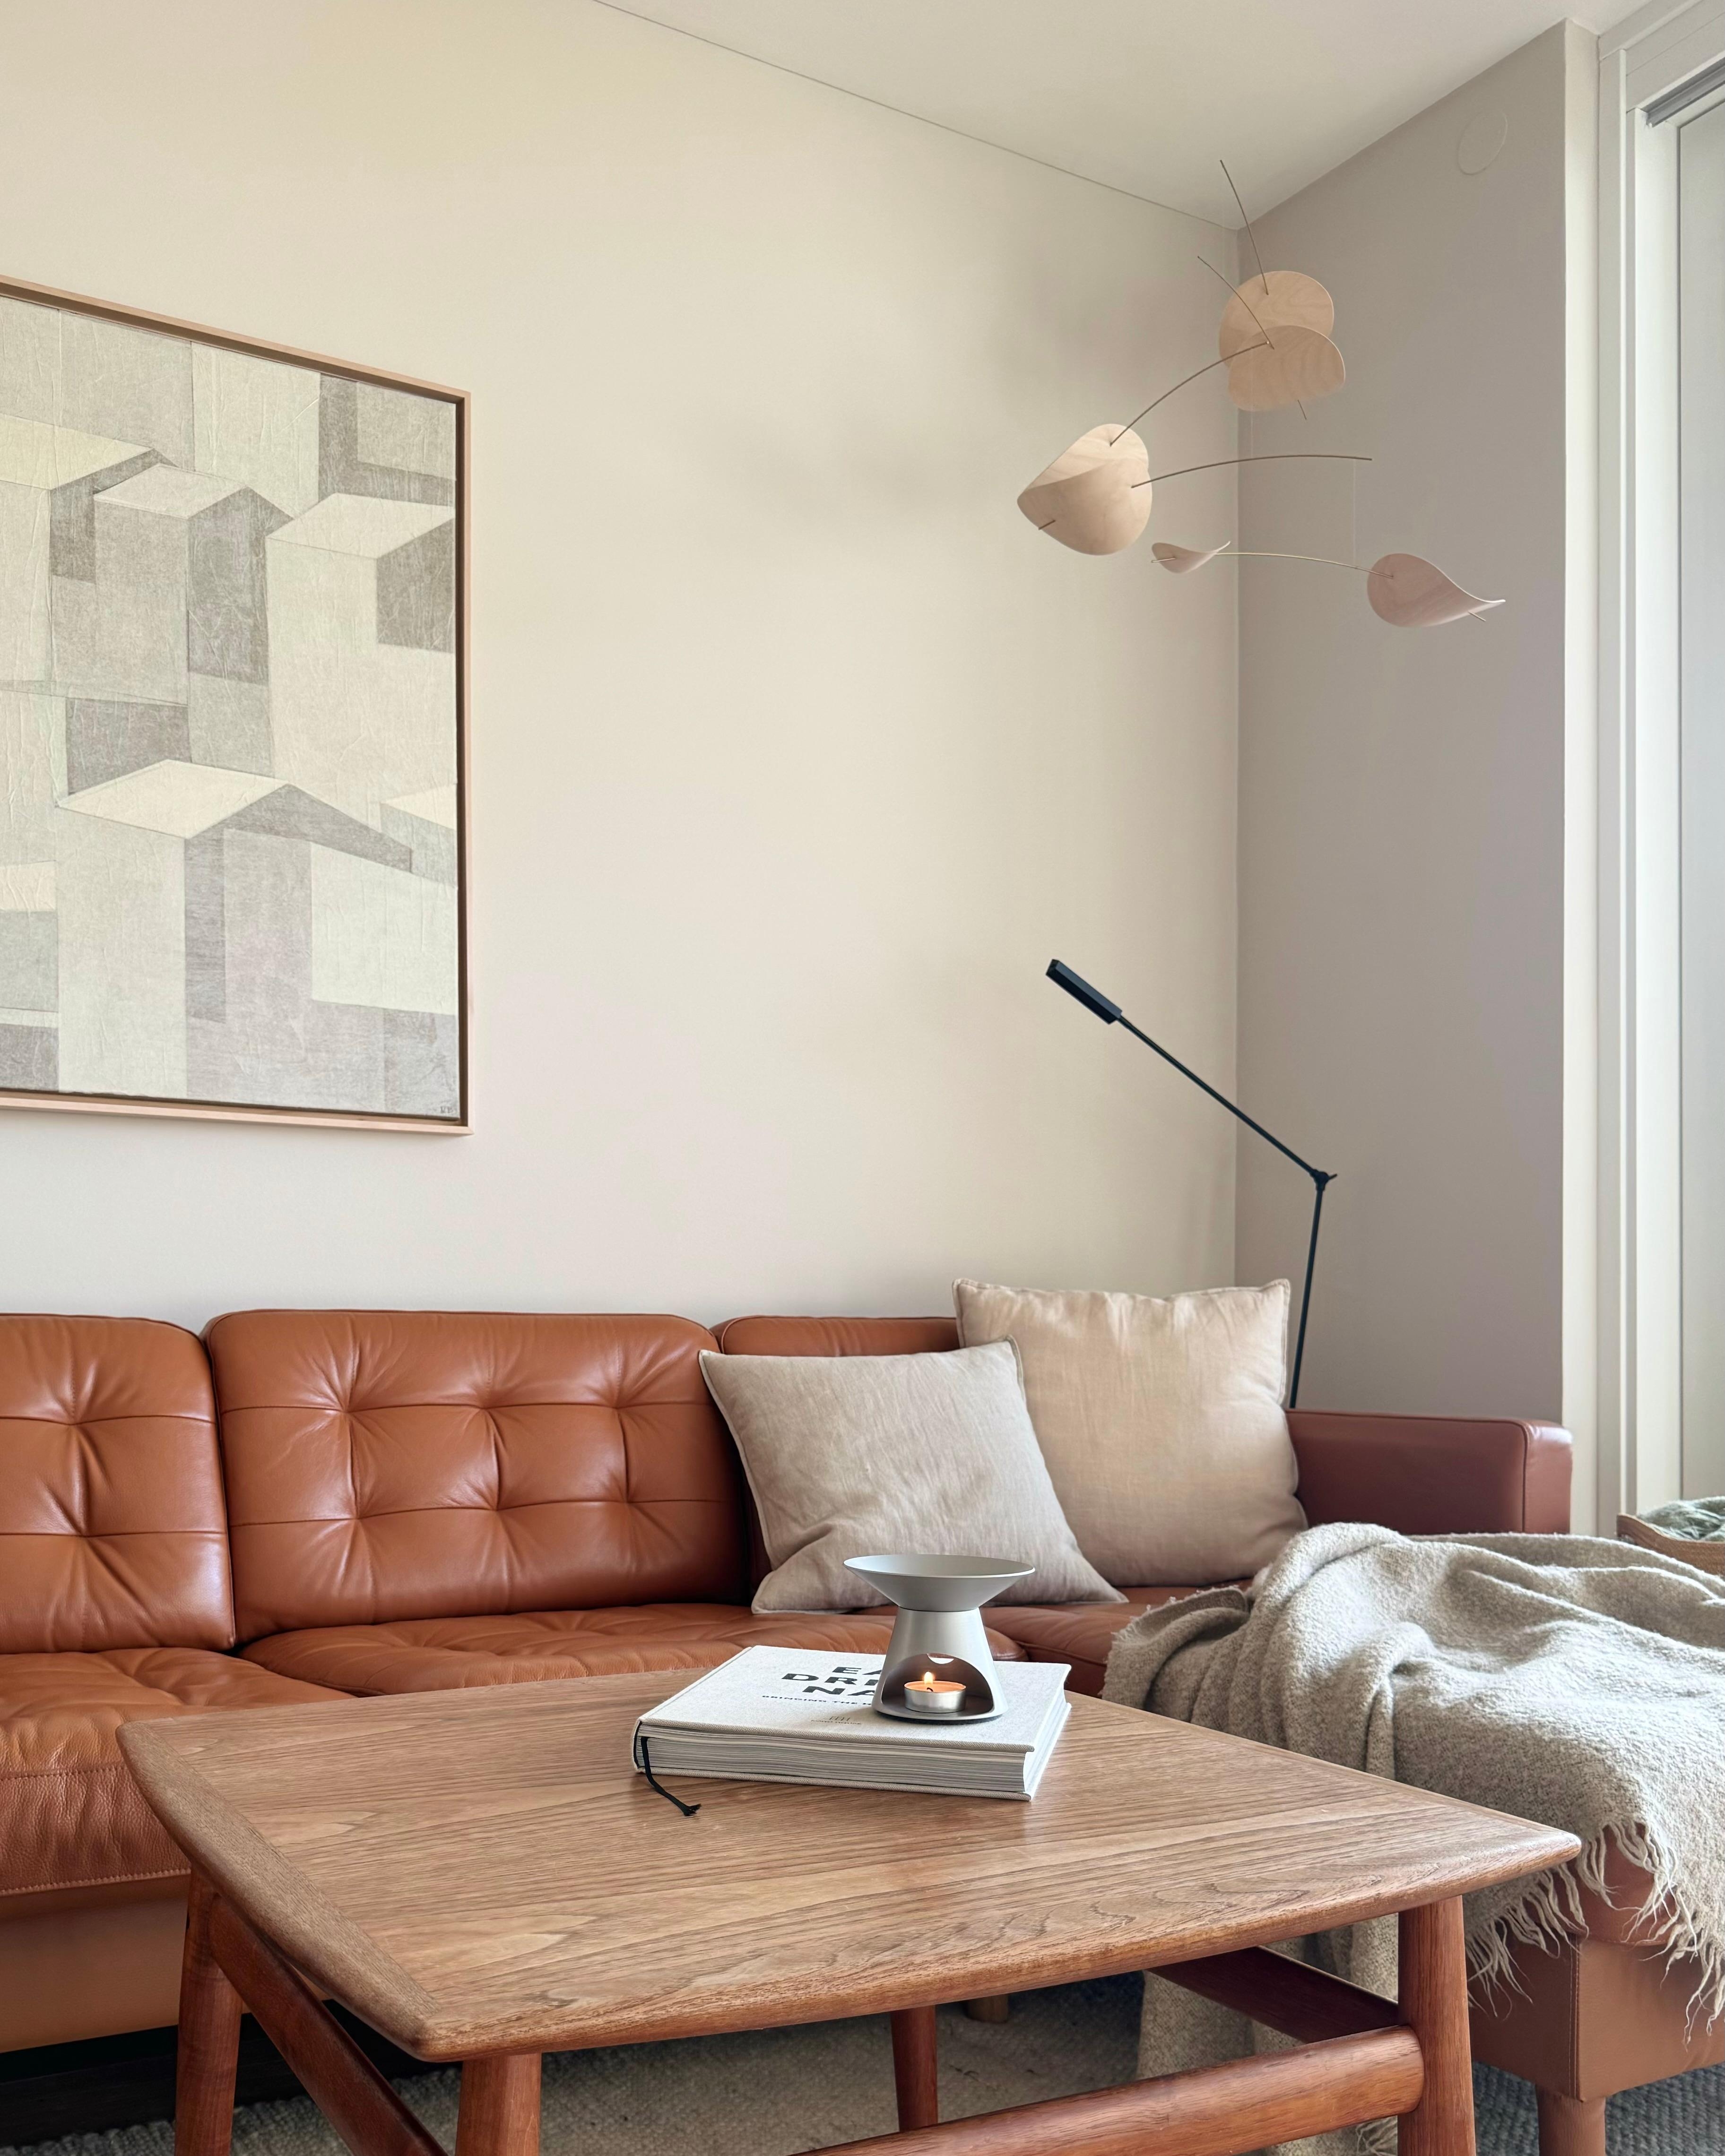 Cozy ✨ Startet gut in die neue Woche 🌸
#wohnzimmer #couch #sofa #mobile #öllampe #kerze #hygge #relax